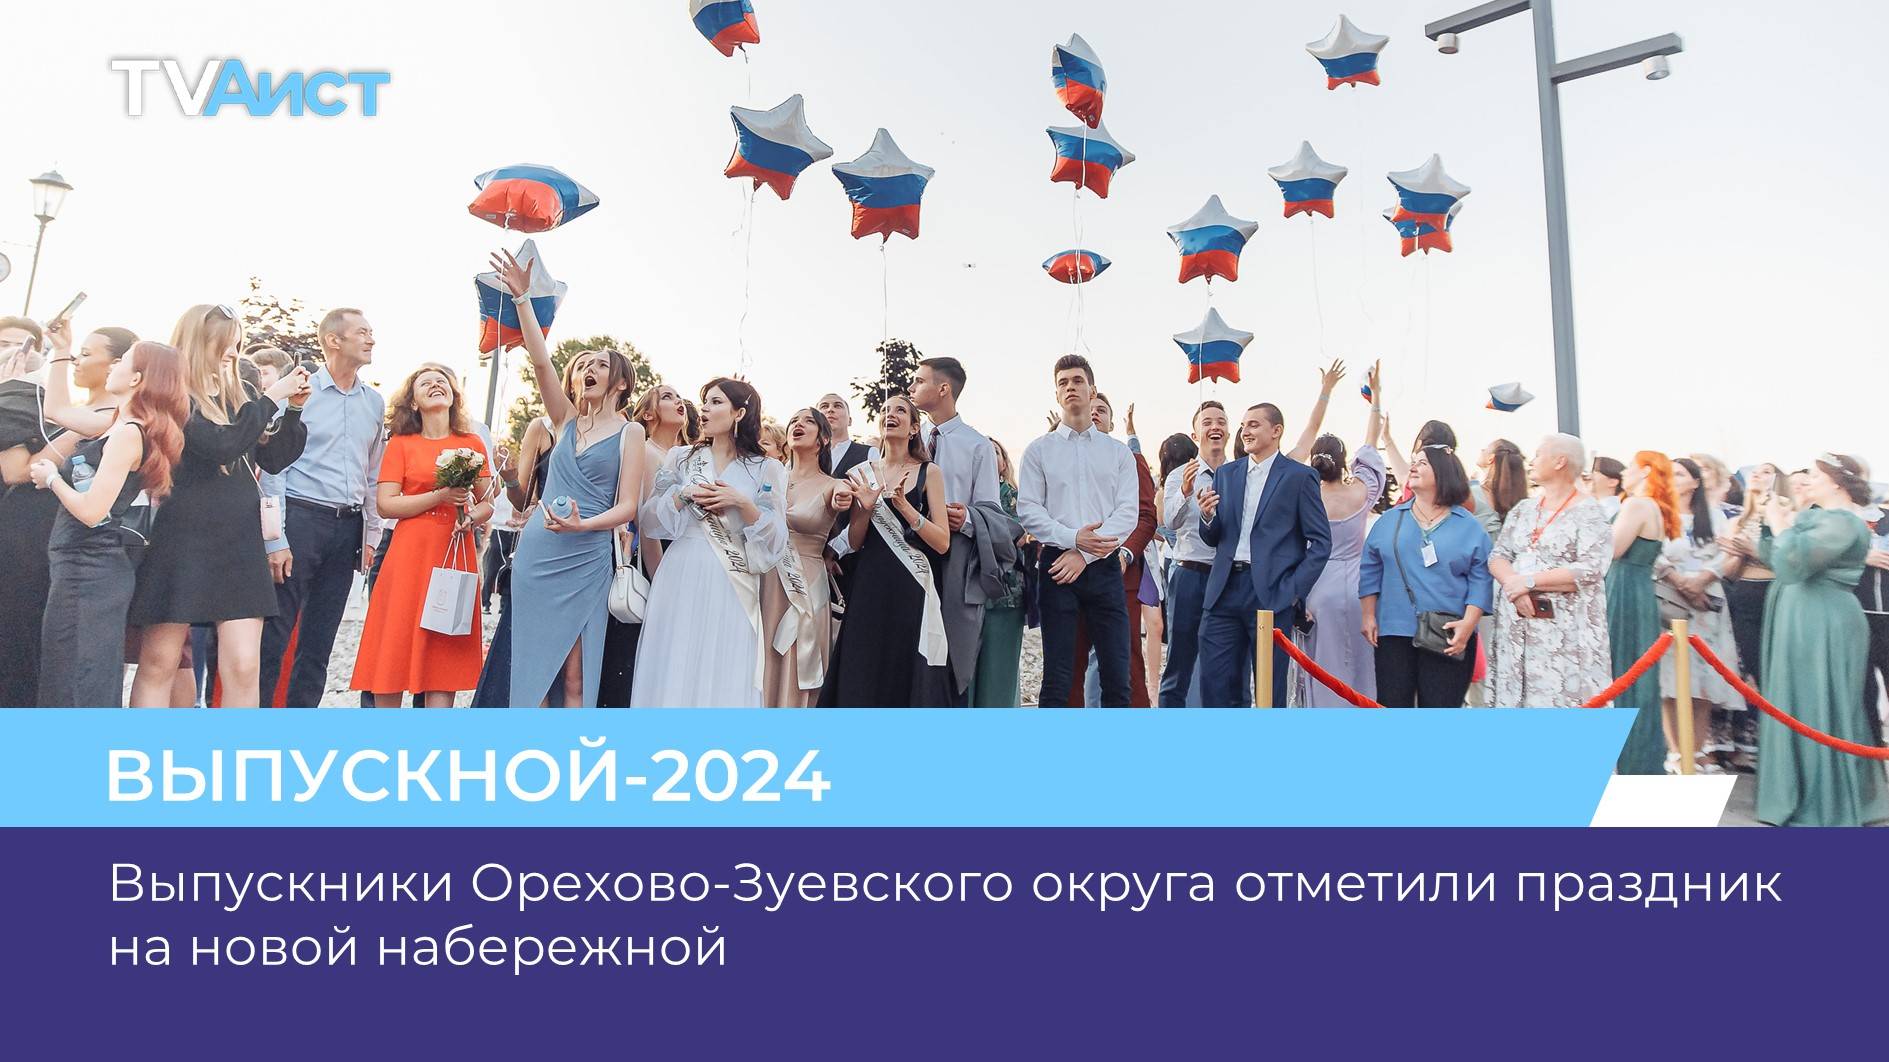 Выпускники Орехово-Зуевского округа отметили праздник на новой набережной